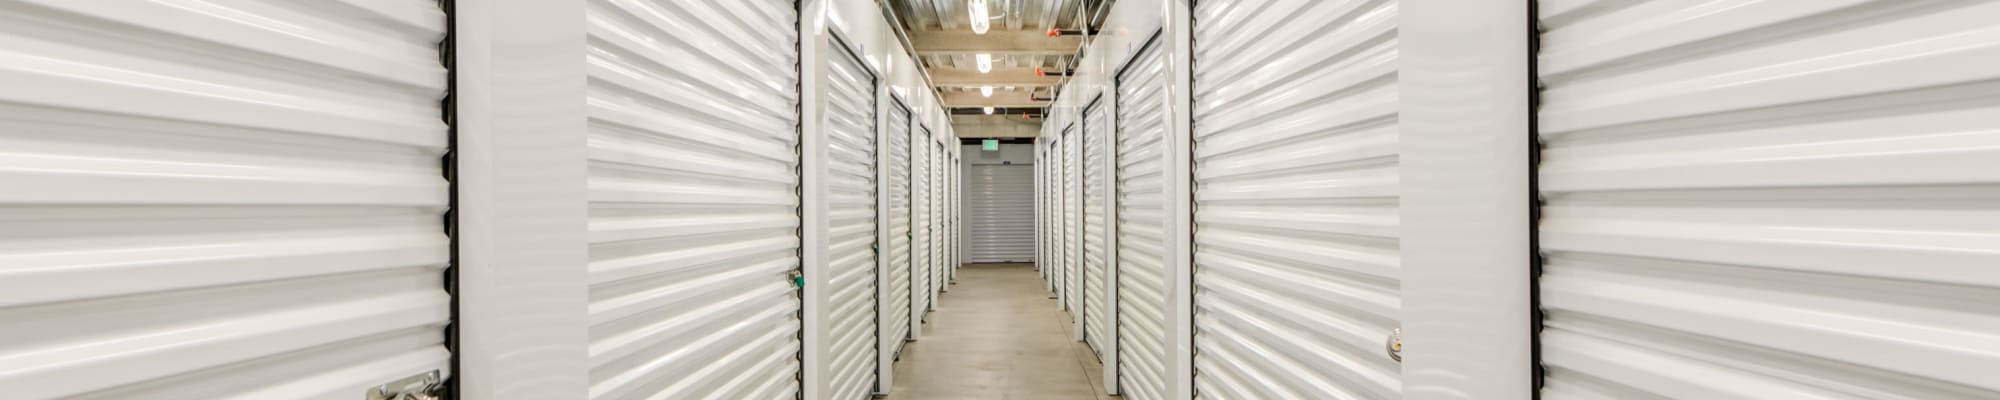 Self storage units in Storage Etc De Soto in Chatsworth, California